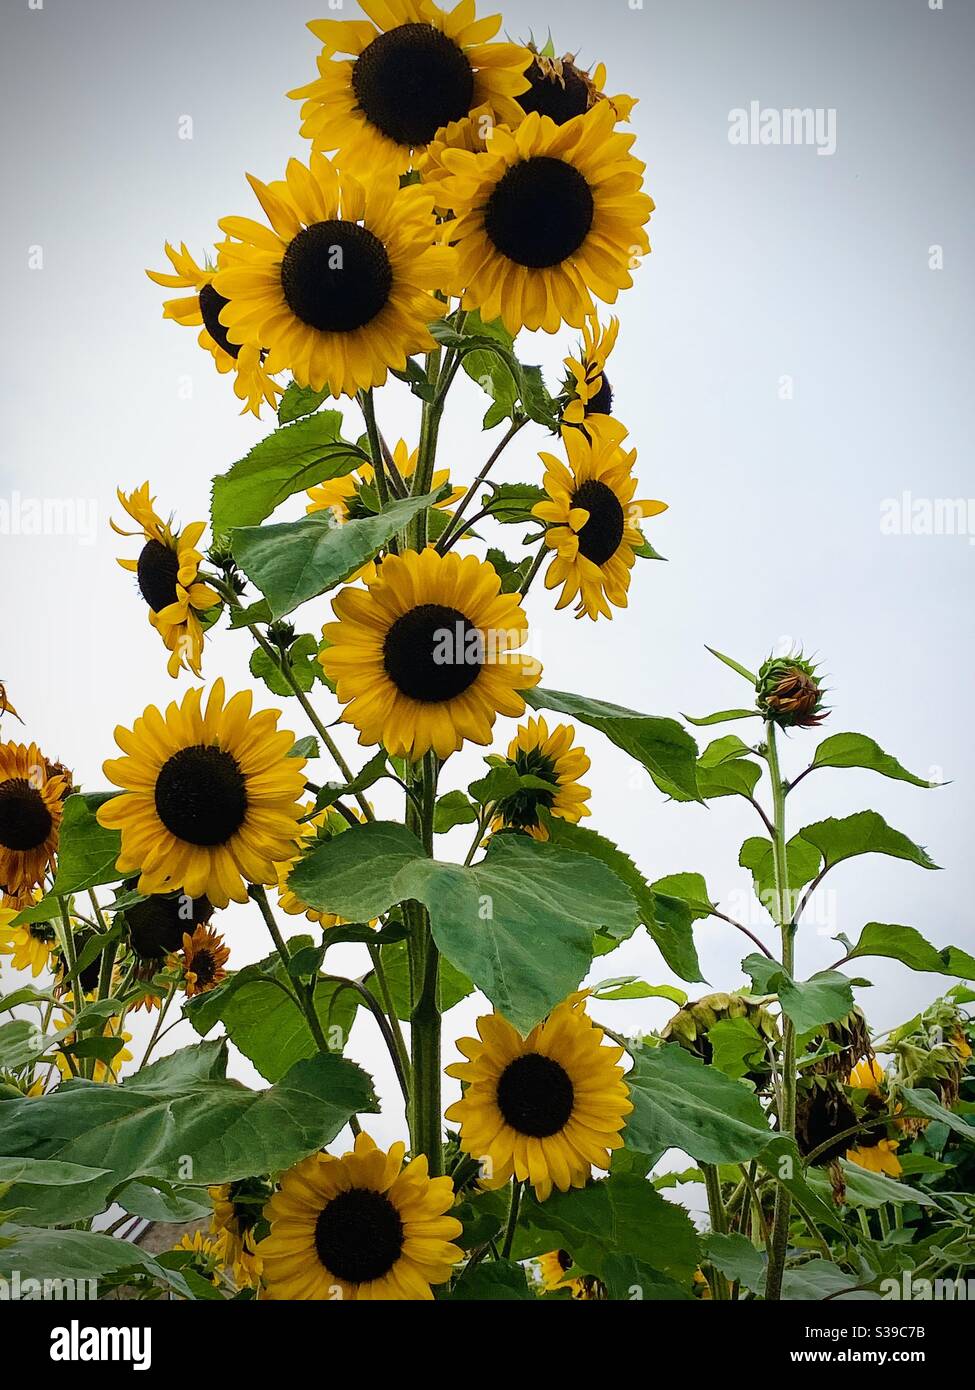 Towering sunflowers Stock Photo